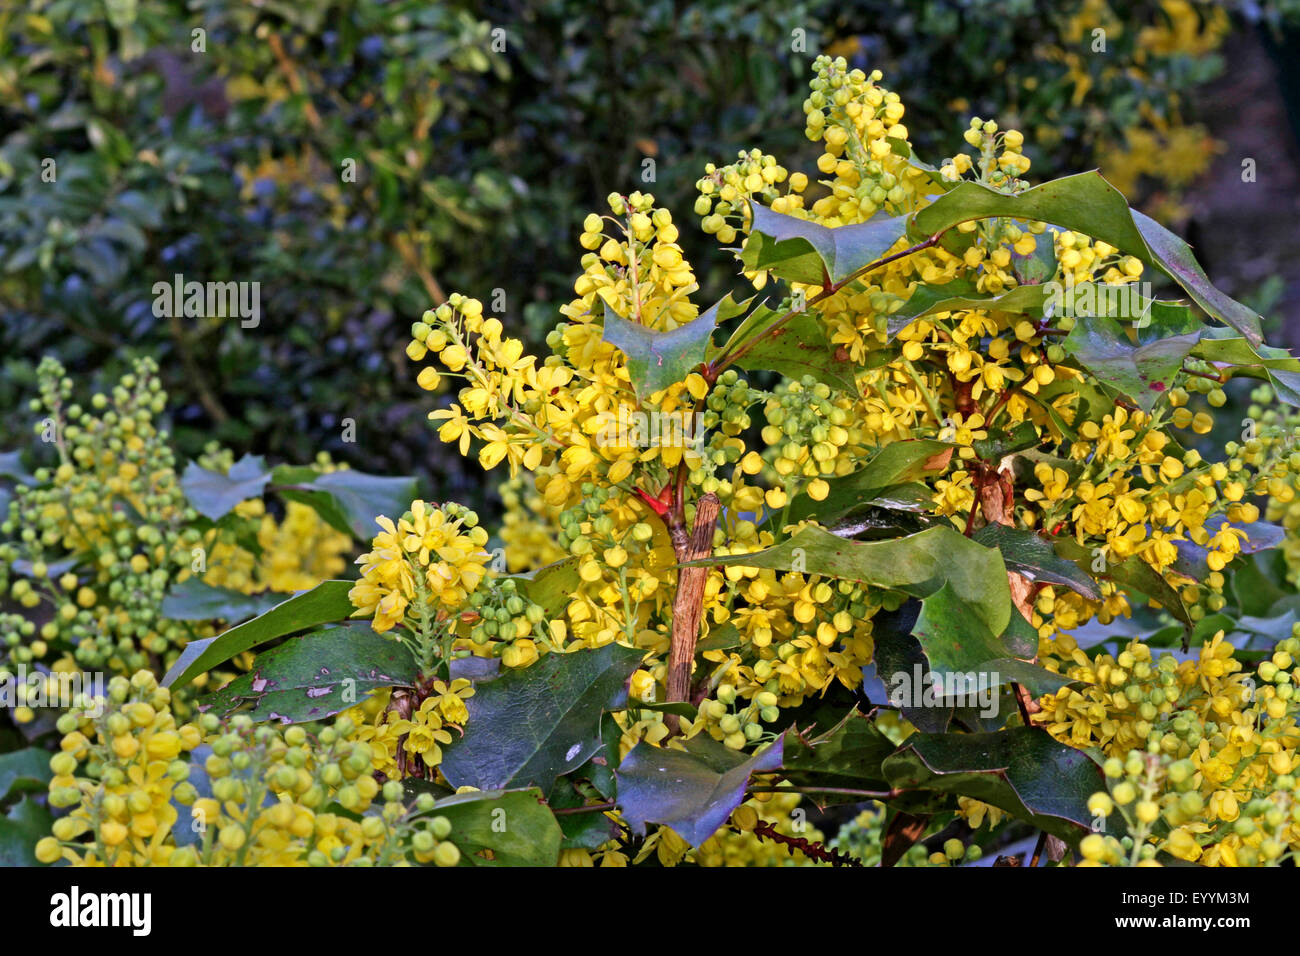 holly-leaf oregongrape, oregon-grape, shining oregongrape, tall oregongrape, mountain grape (Mahonia aquifolium), blooming, Germany Stock Photo